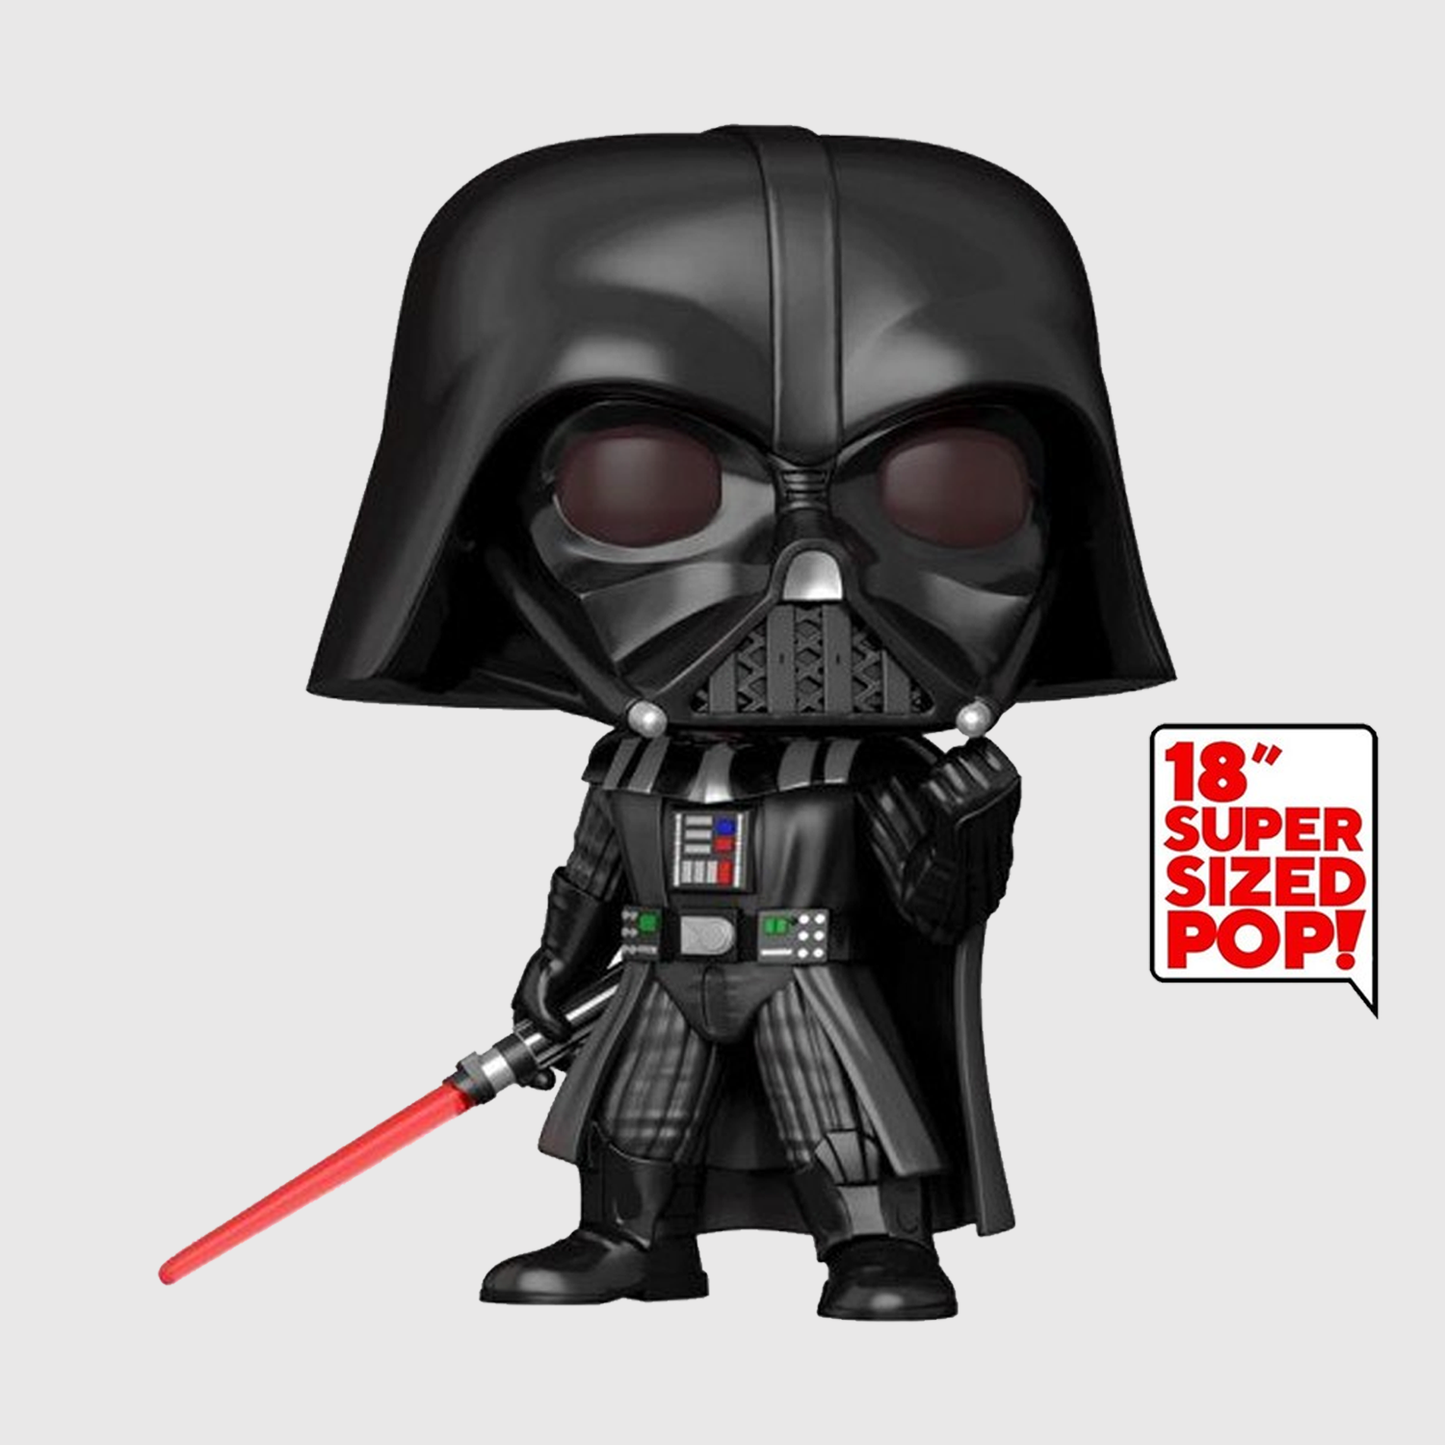 (PRE-ORDER) Funko POP! Star Wars: Return of the Jedi - Darth Vader 18” (Funko Shop) #569